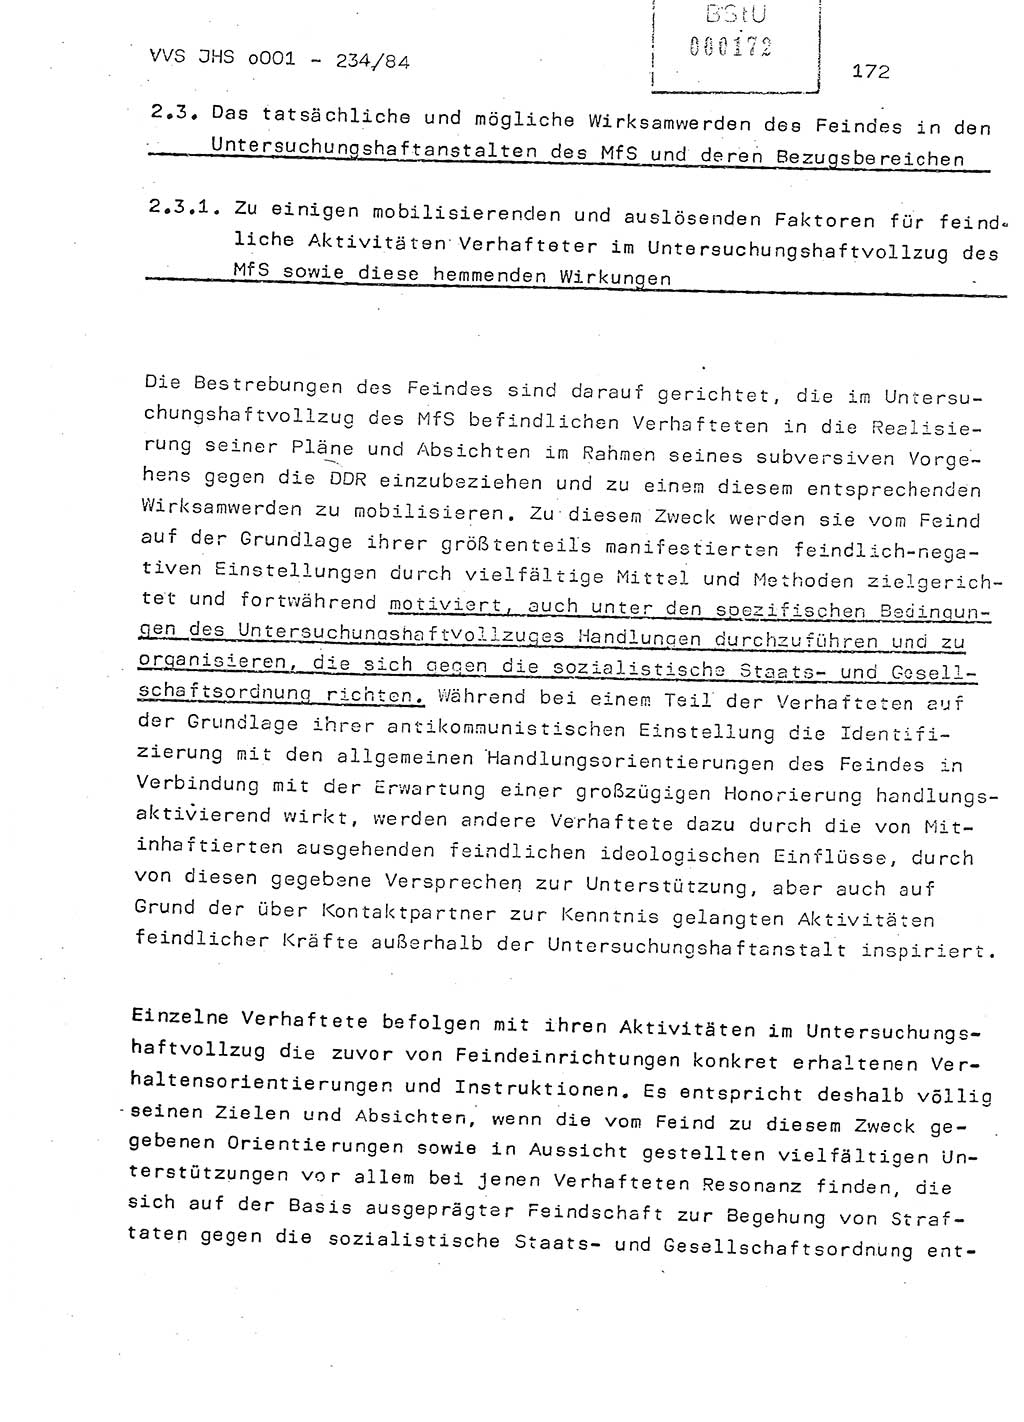 Dissertation Oberst Siegfried Rataizick (Abt. ⅩⅣ), Oberstleutnant Volkmar Heinz (Abt. ⅩⅣ), Oberstleutnant Werner Stein (HA Ⅸ), Hauptmann Heinz Conrad (JHS), Ministerium für Staatssicherheit (MfS) [Deutsche Demokratische Republik (DDR)], Juristische Hochschule (JHS), Vertrauliche Verschlußsache (VVS) o001-234/84, Potsdam 1984, Seite 172 (Diss. MfS DDR JHS VVS o001-234/84 1984, S. 172)